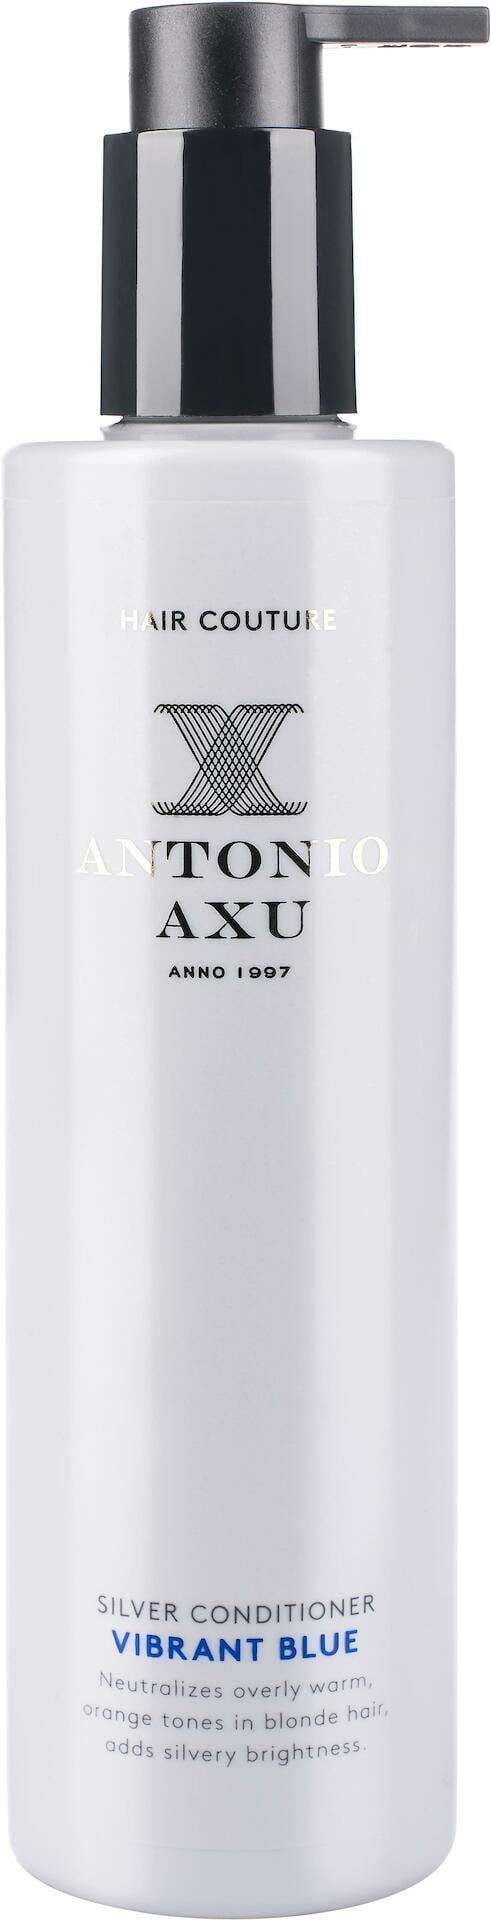 Antonio Axu Silver Conditioner Vibrant Blue 300ml